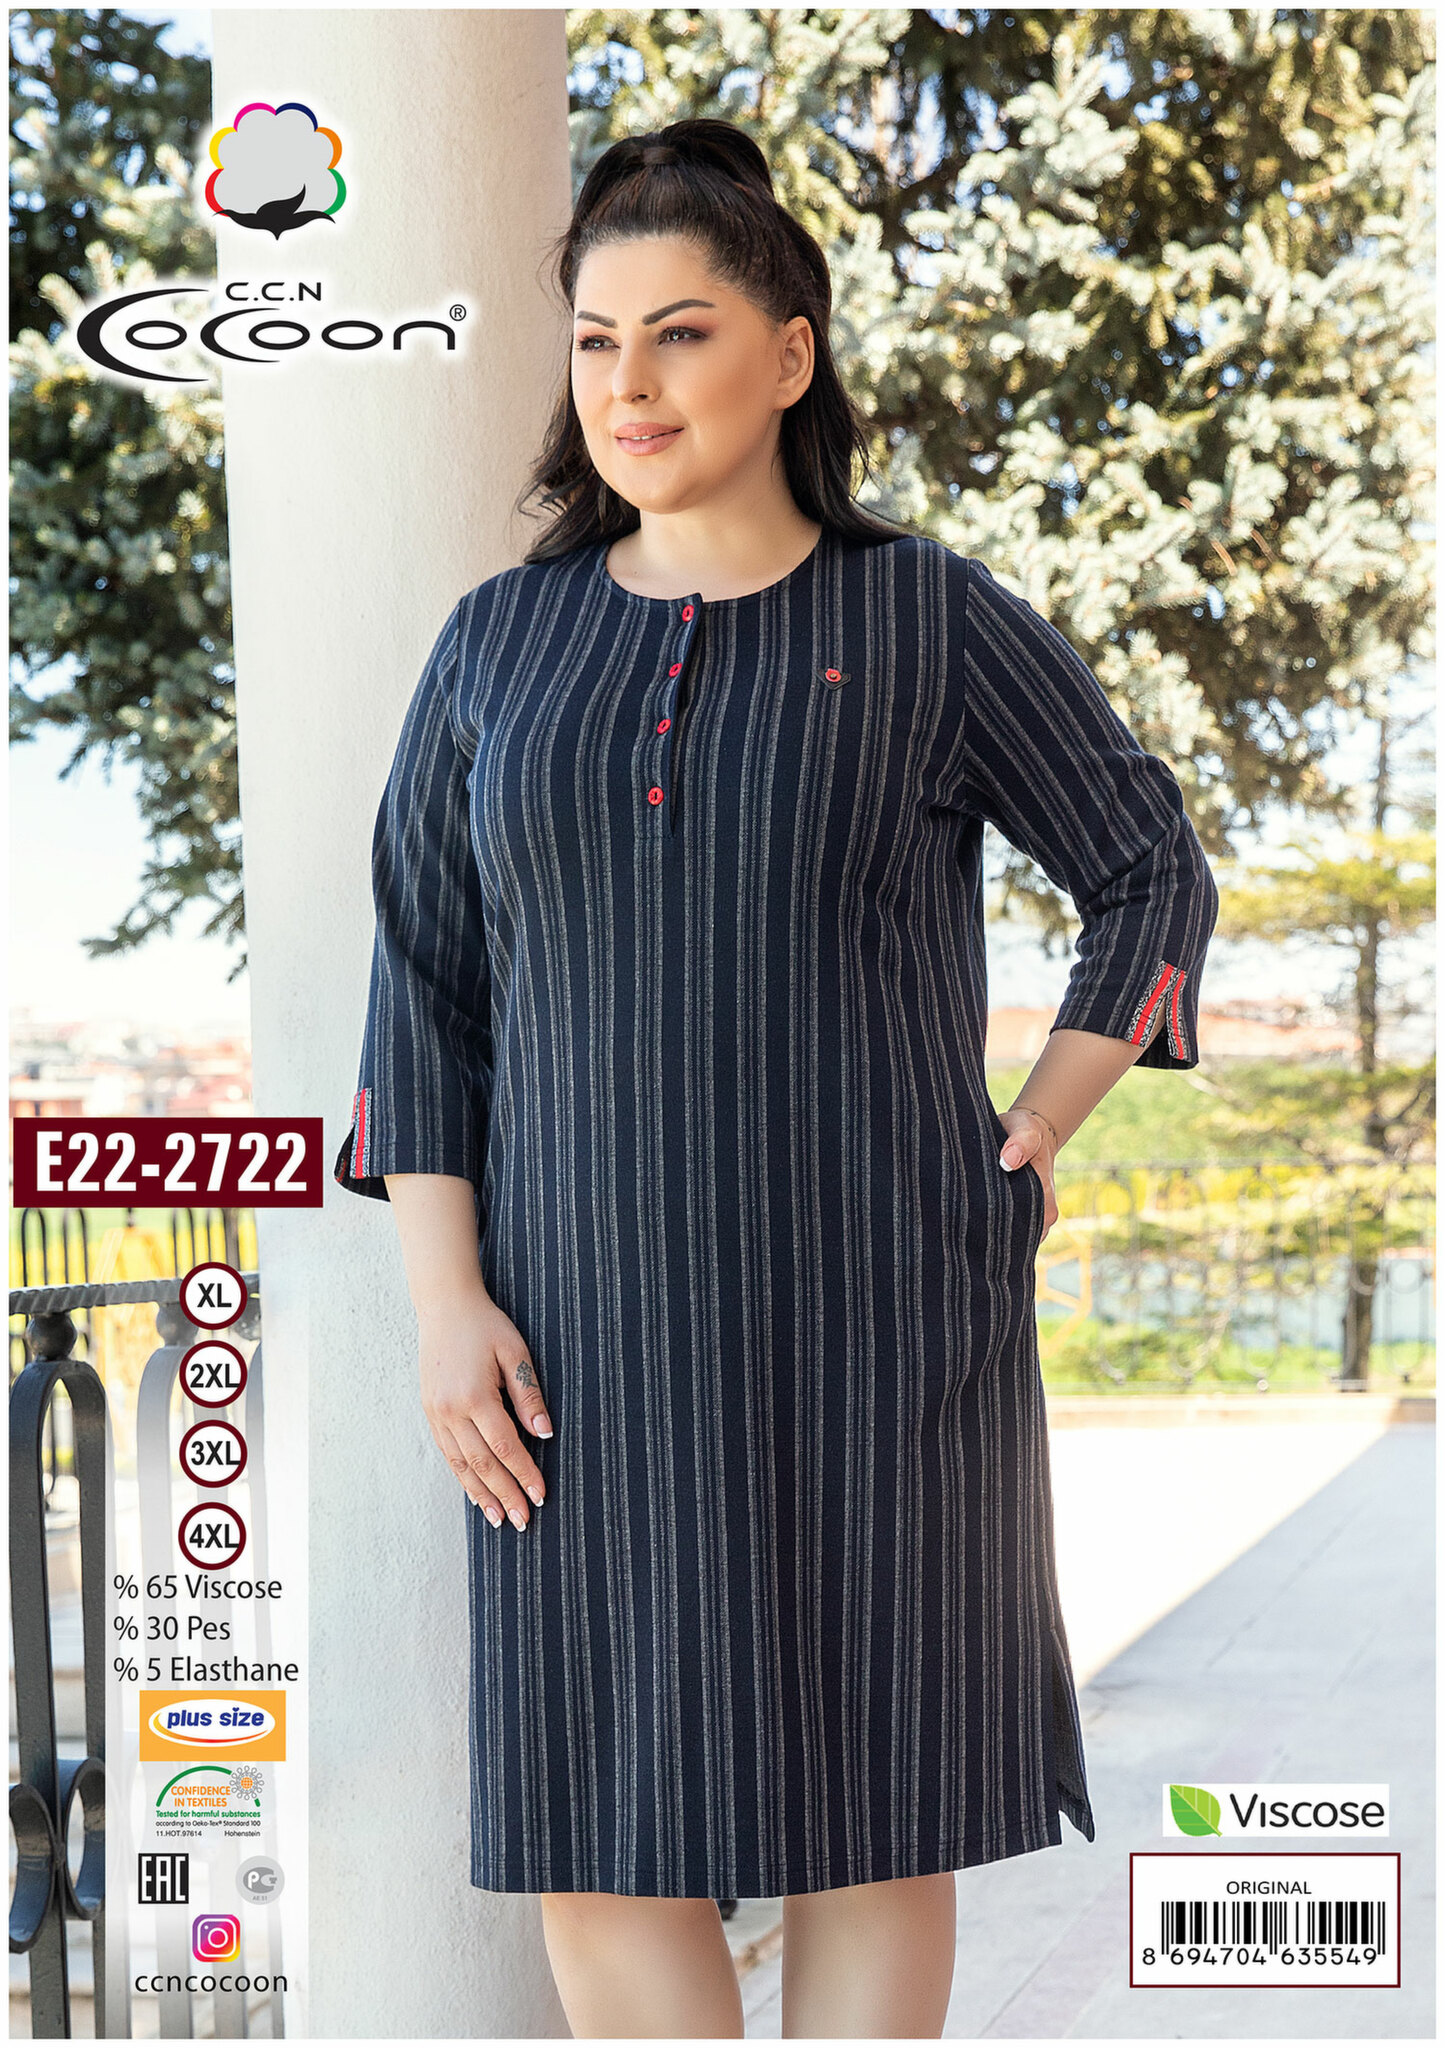 Трикотажное платье E22-2722 Cocoon рис. 1